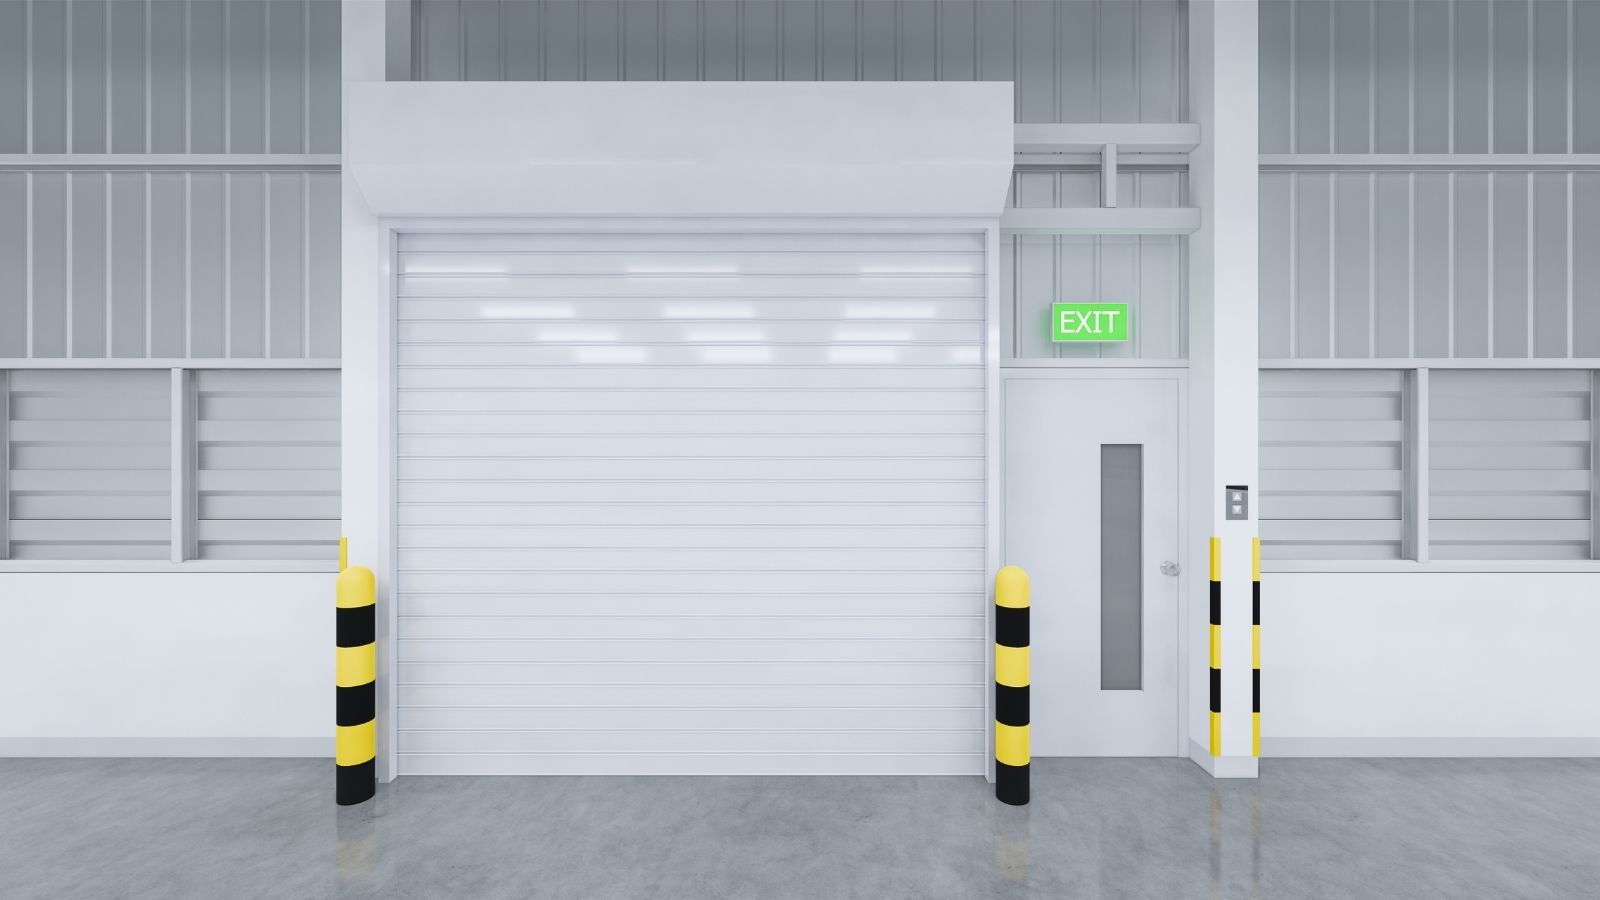 Repairing commercial garage doors